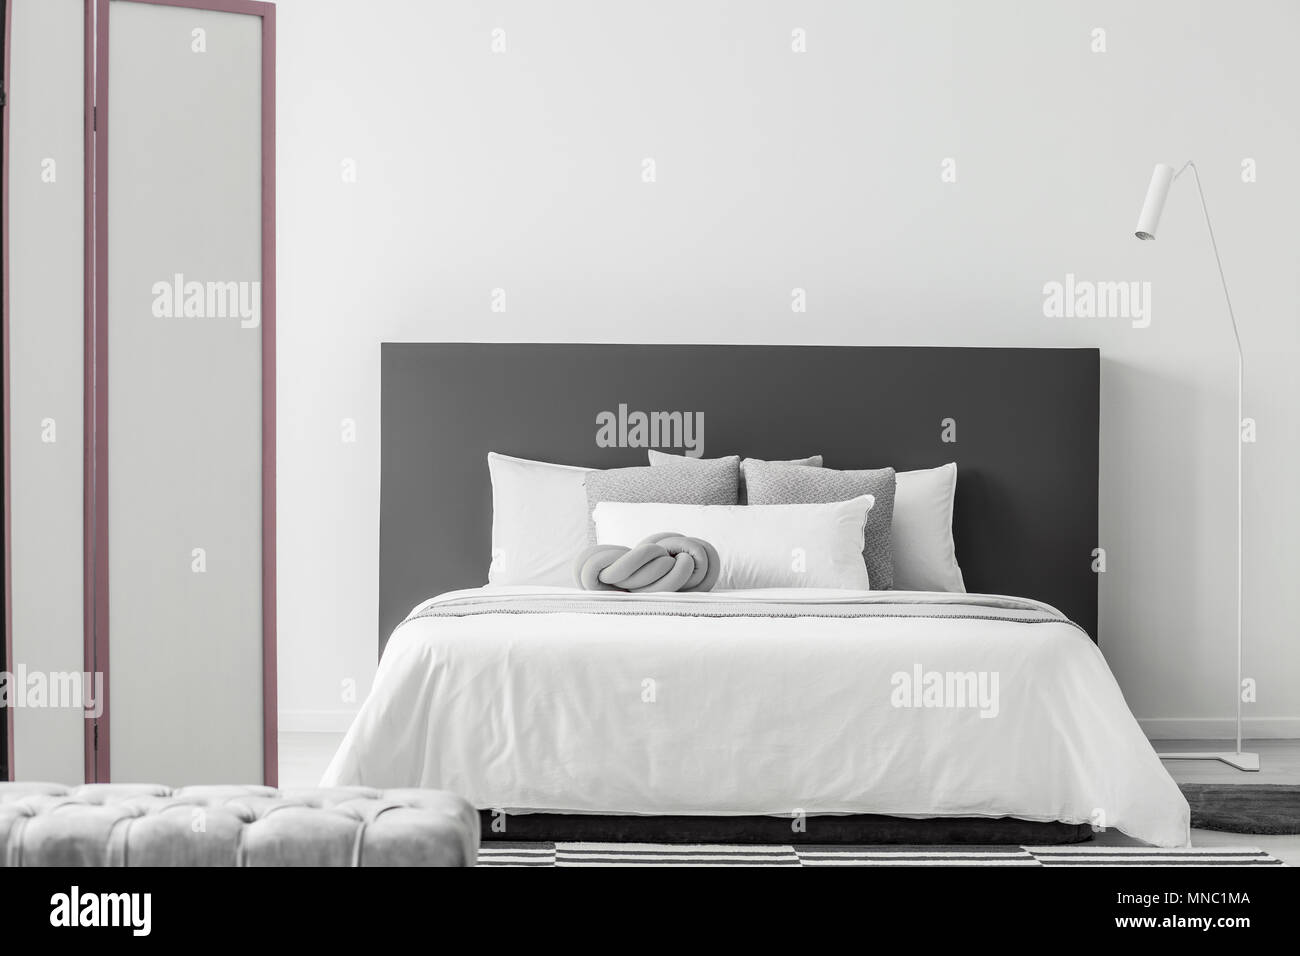 Weiße Lampe neben dem Bett mit grauen bedhead in minimalen Schlafzimmer  Innenraum mit Pouf und Bildschirm Stockfotografie - Alamy